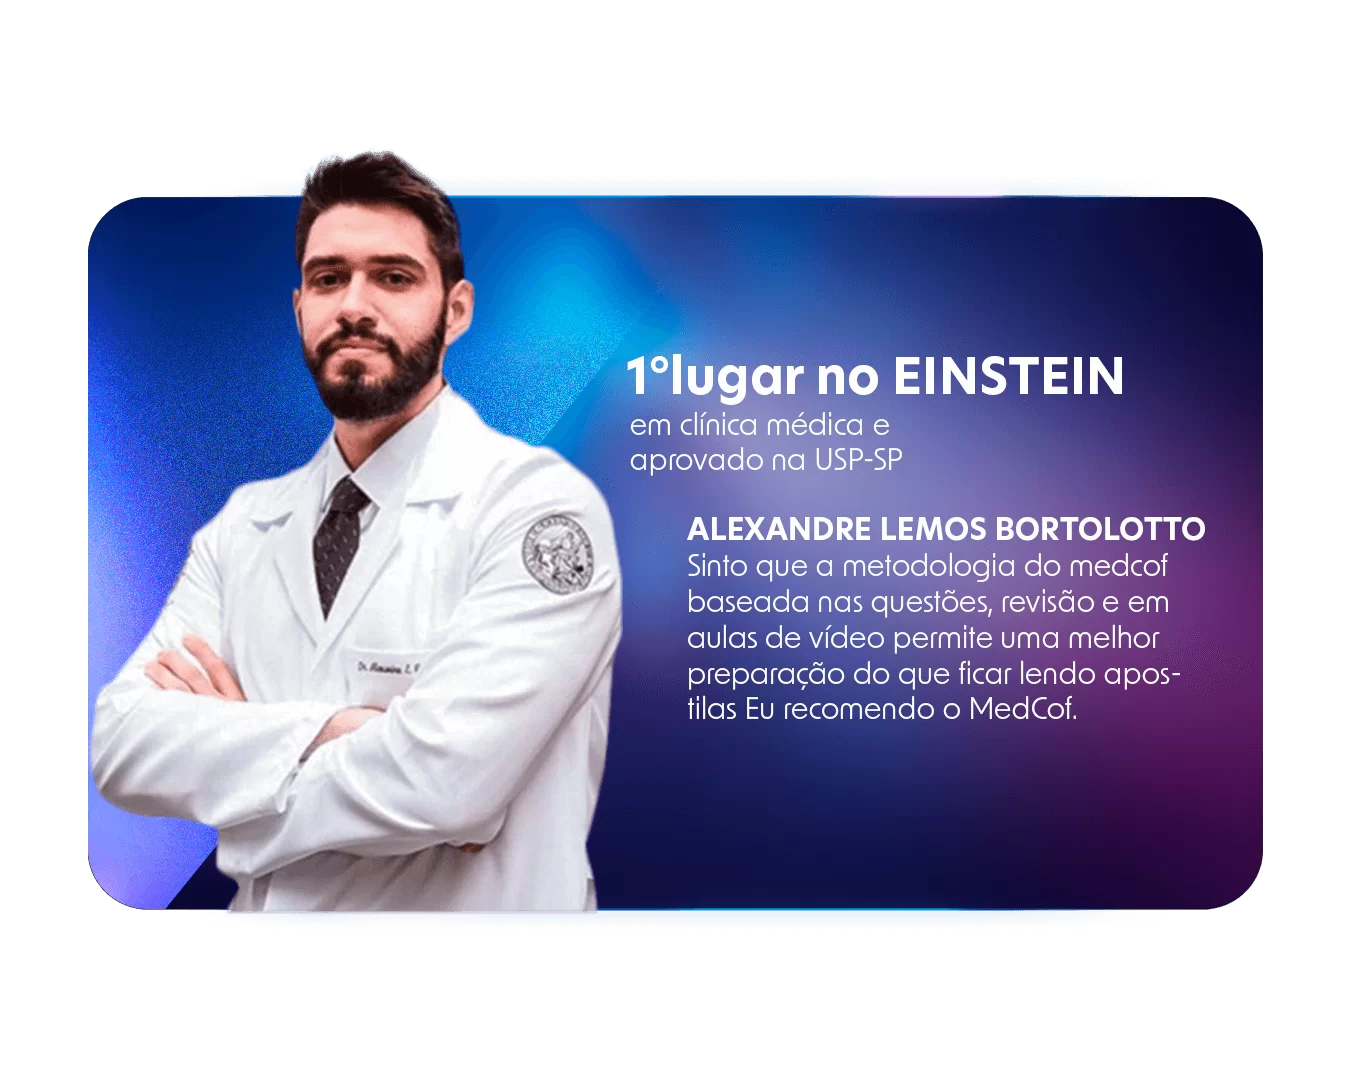 Alexandre-Lemos-Bortolotto-Primeiro-Lugar-EINSTEIN-Clinica-Medica